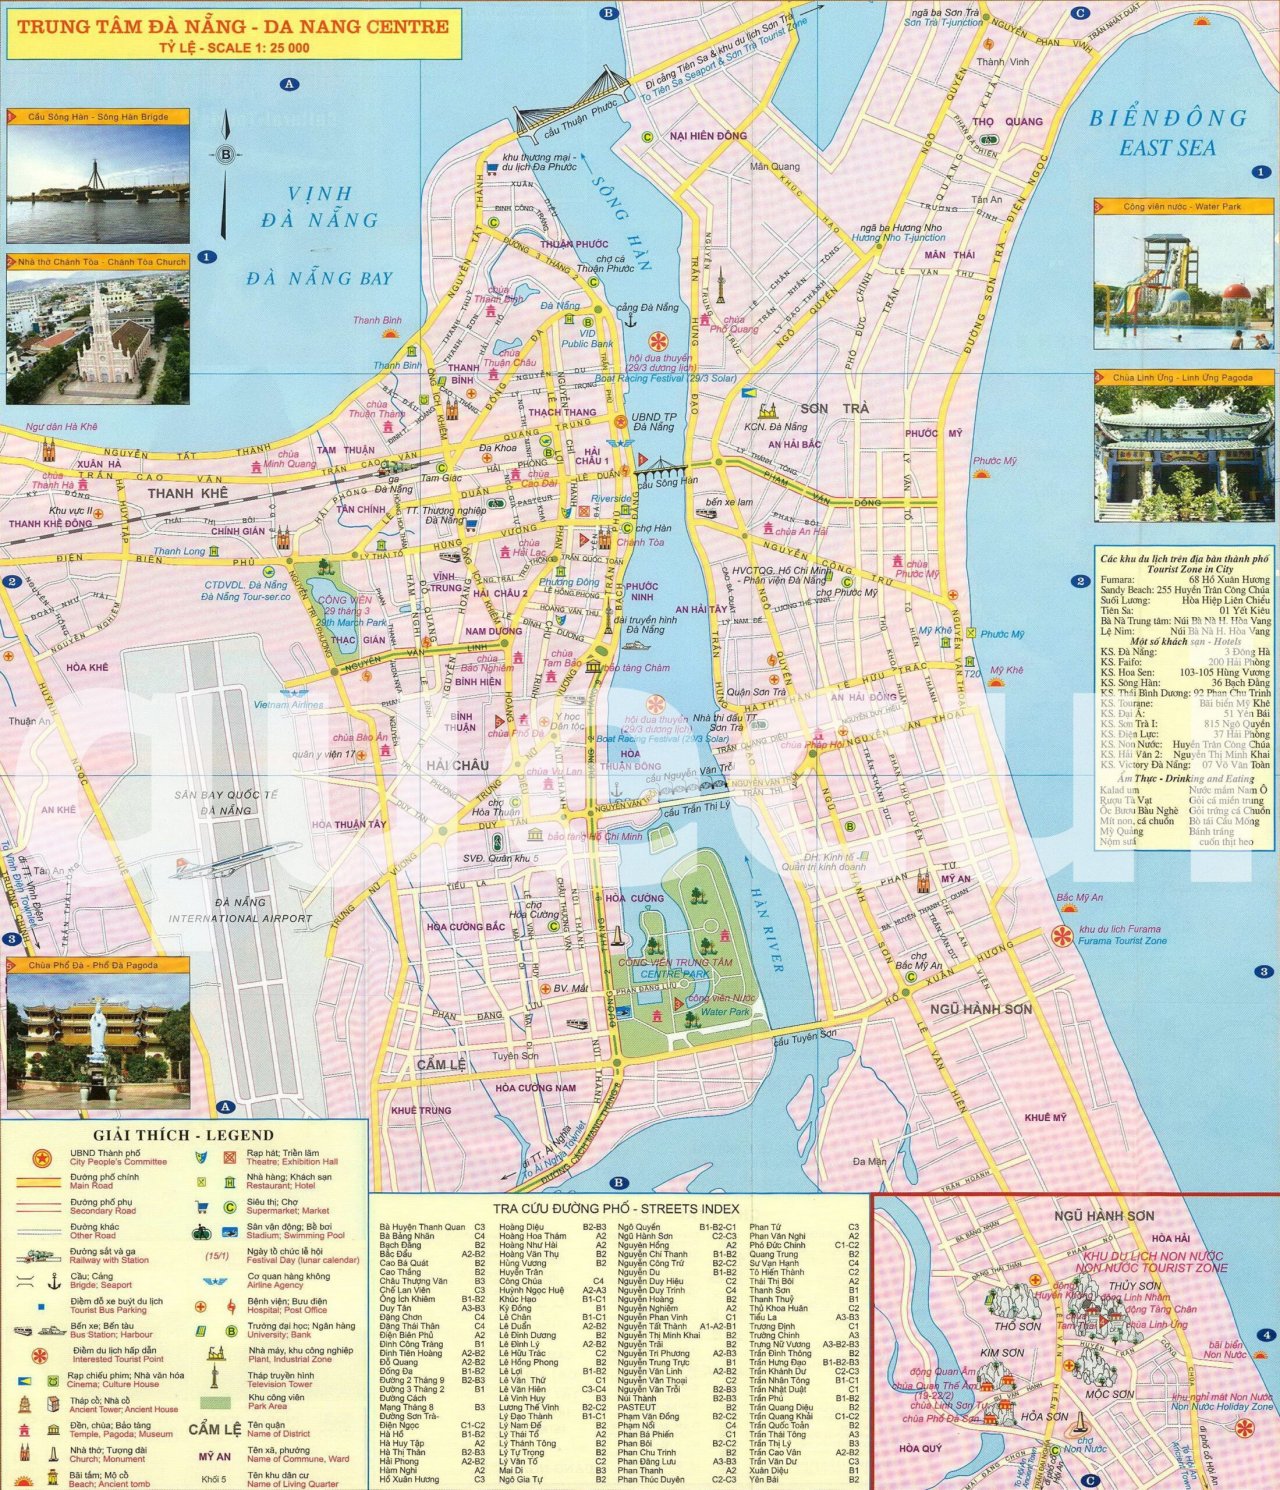 Bản đồ hành chính Thành phố Đà Nẵng: Khám phá bản đồ hành chính Thành phố Đà Nẵng mới nhất năm 2024 để tìm hiểu về các khu vực đang phát triển và sự tiến bộ của thành phố trong việc quản lý đô thị. Đừng bỏ lỡ cơ hội xem bản đồ này để hiểu rõ hơn về thành phố đáng sống này.